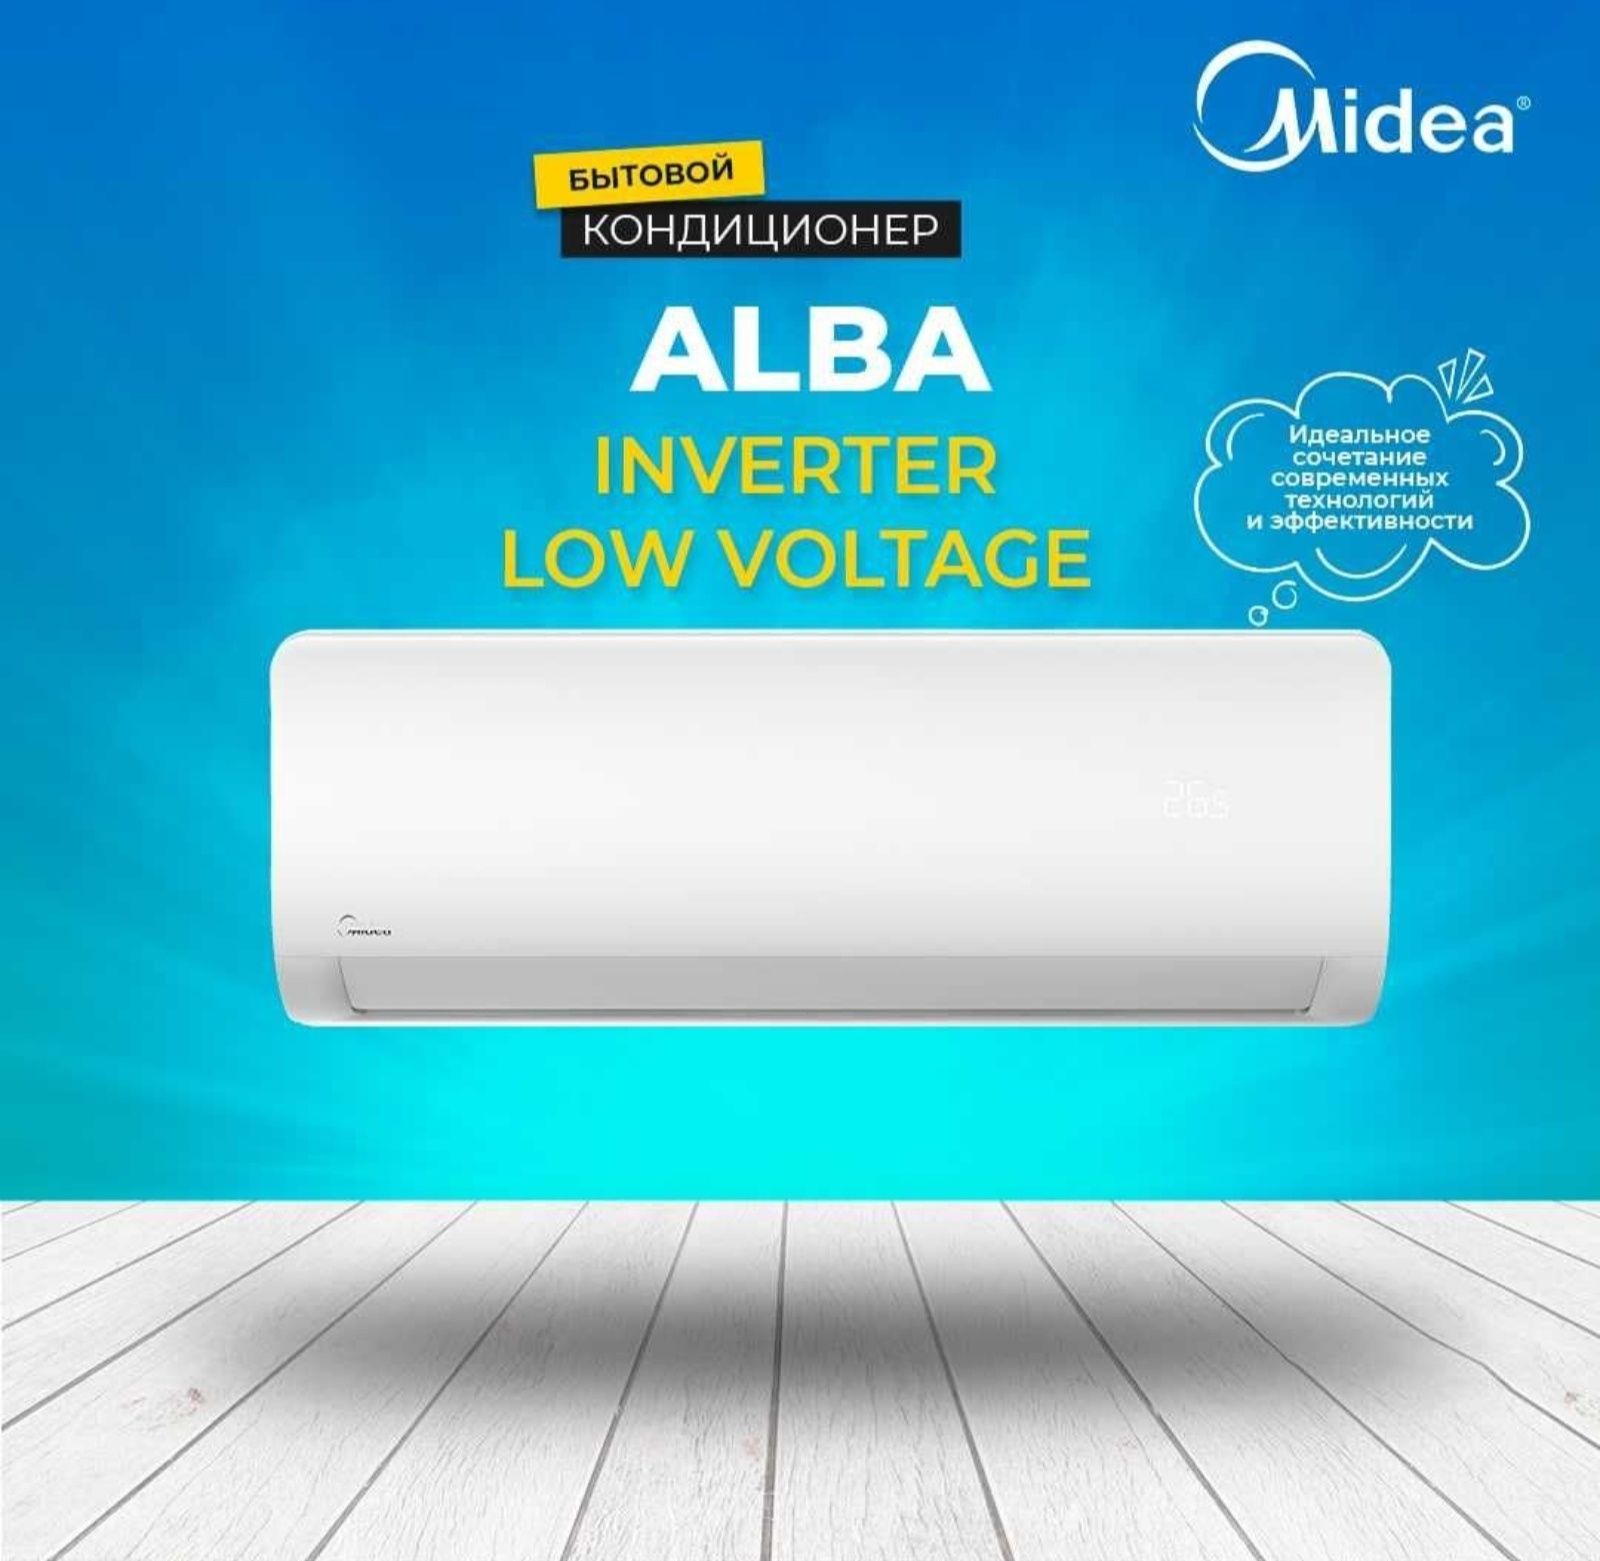 Кондиционер Midea Alba Inverter + Low voltage 9000 BTU 
Японский компр